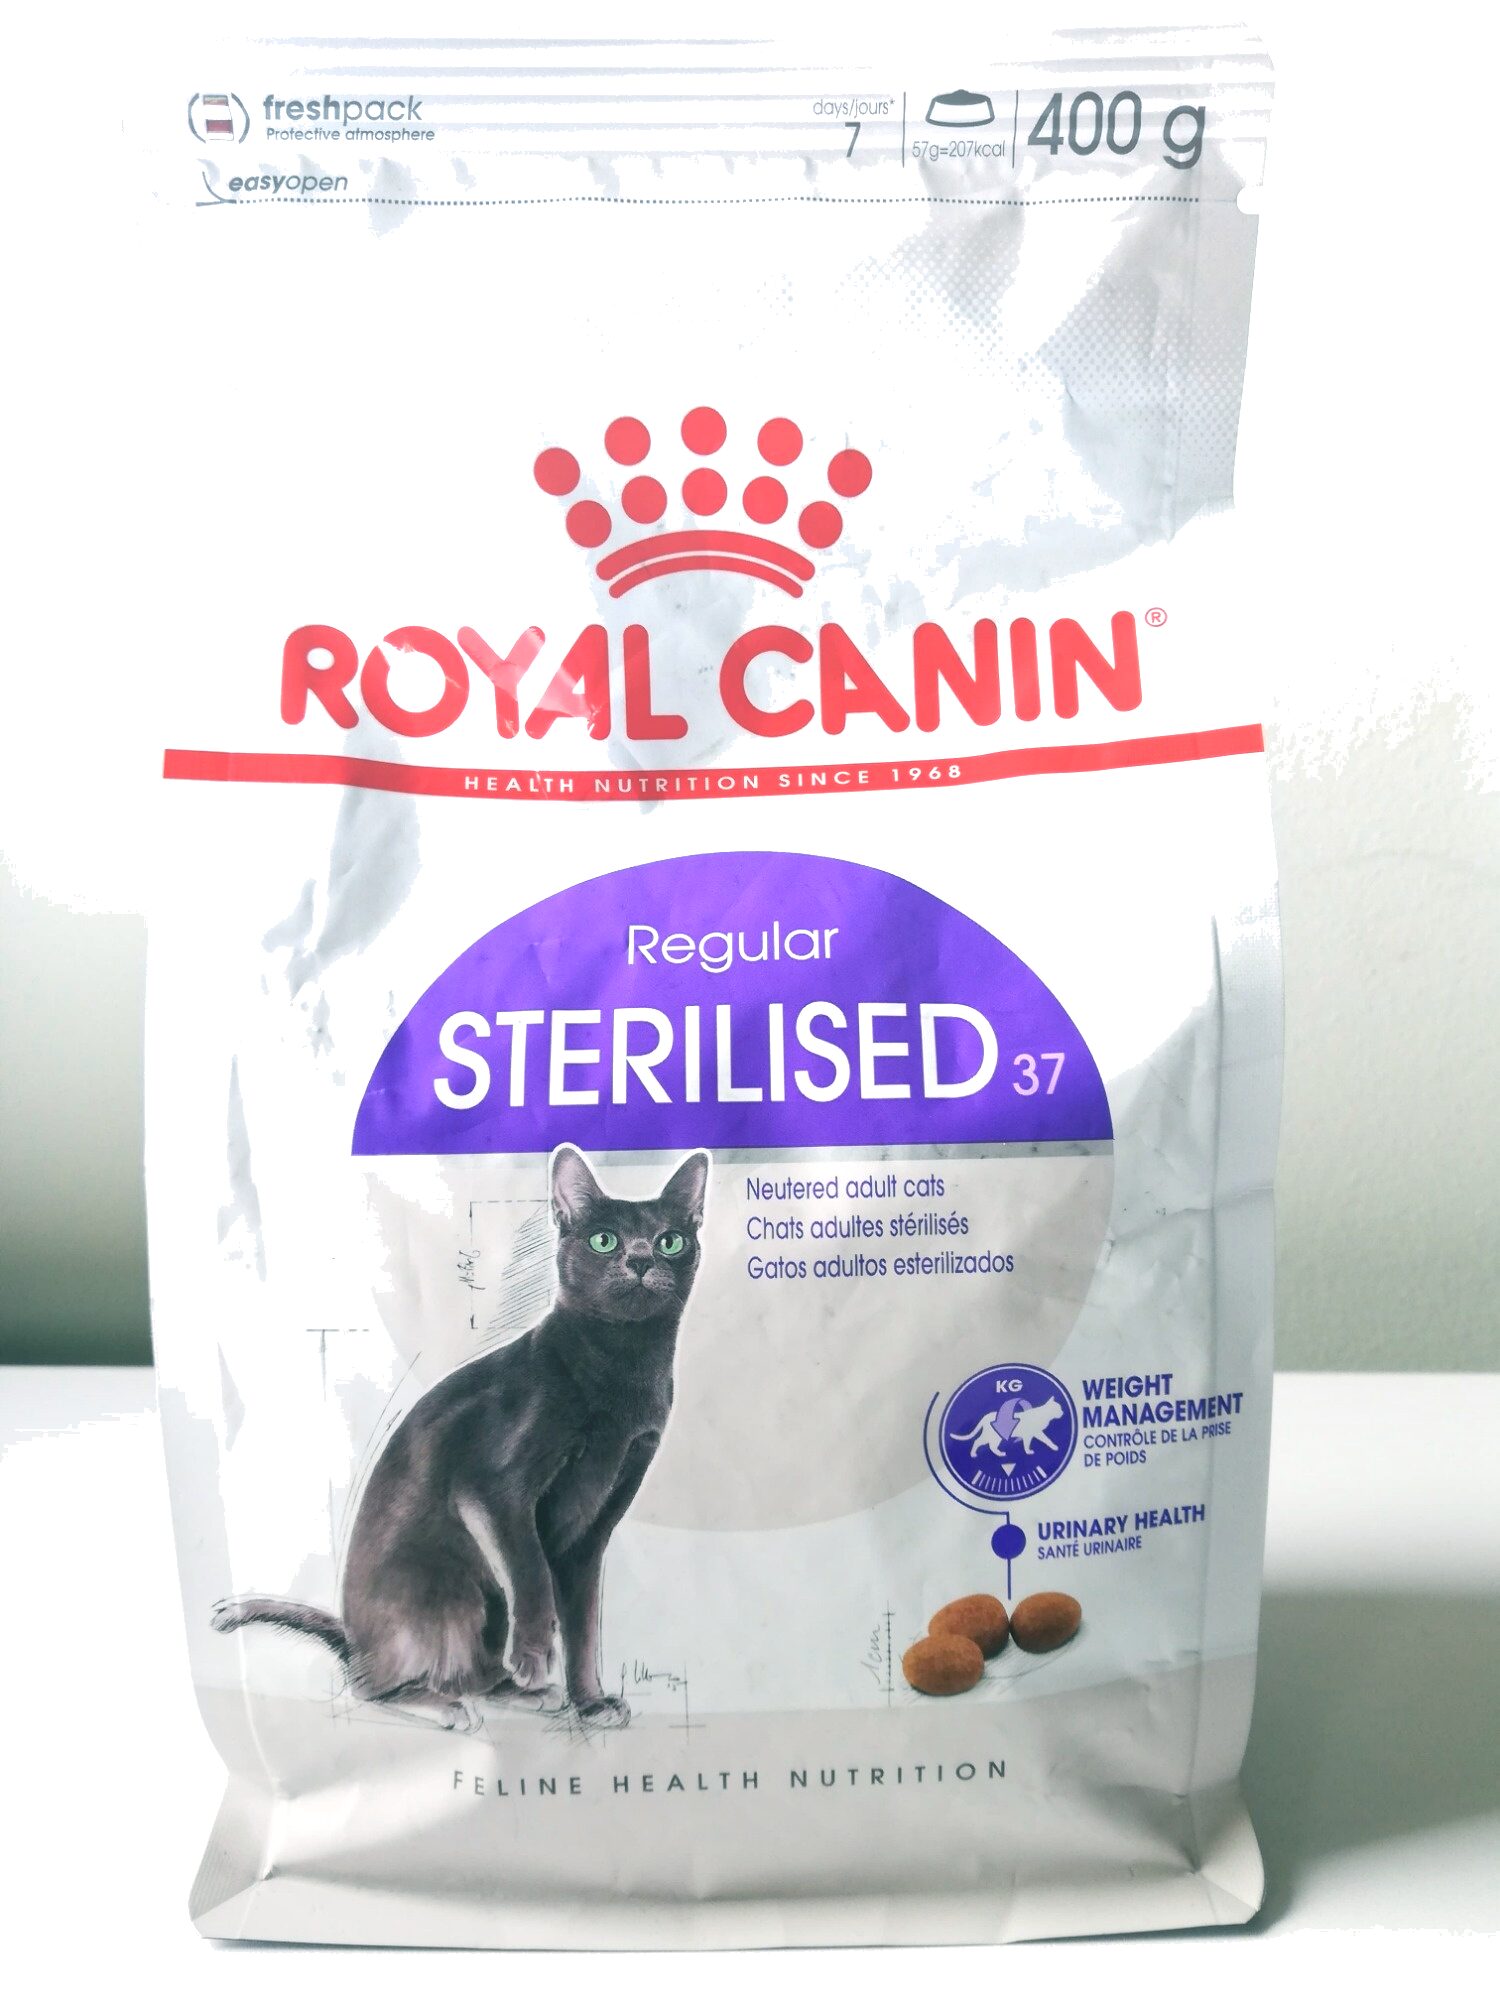 Royal Canin - Chat Stérilisé 37 400G - Ingredients - fr